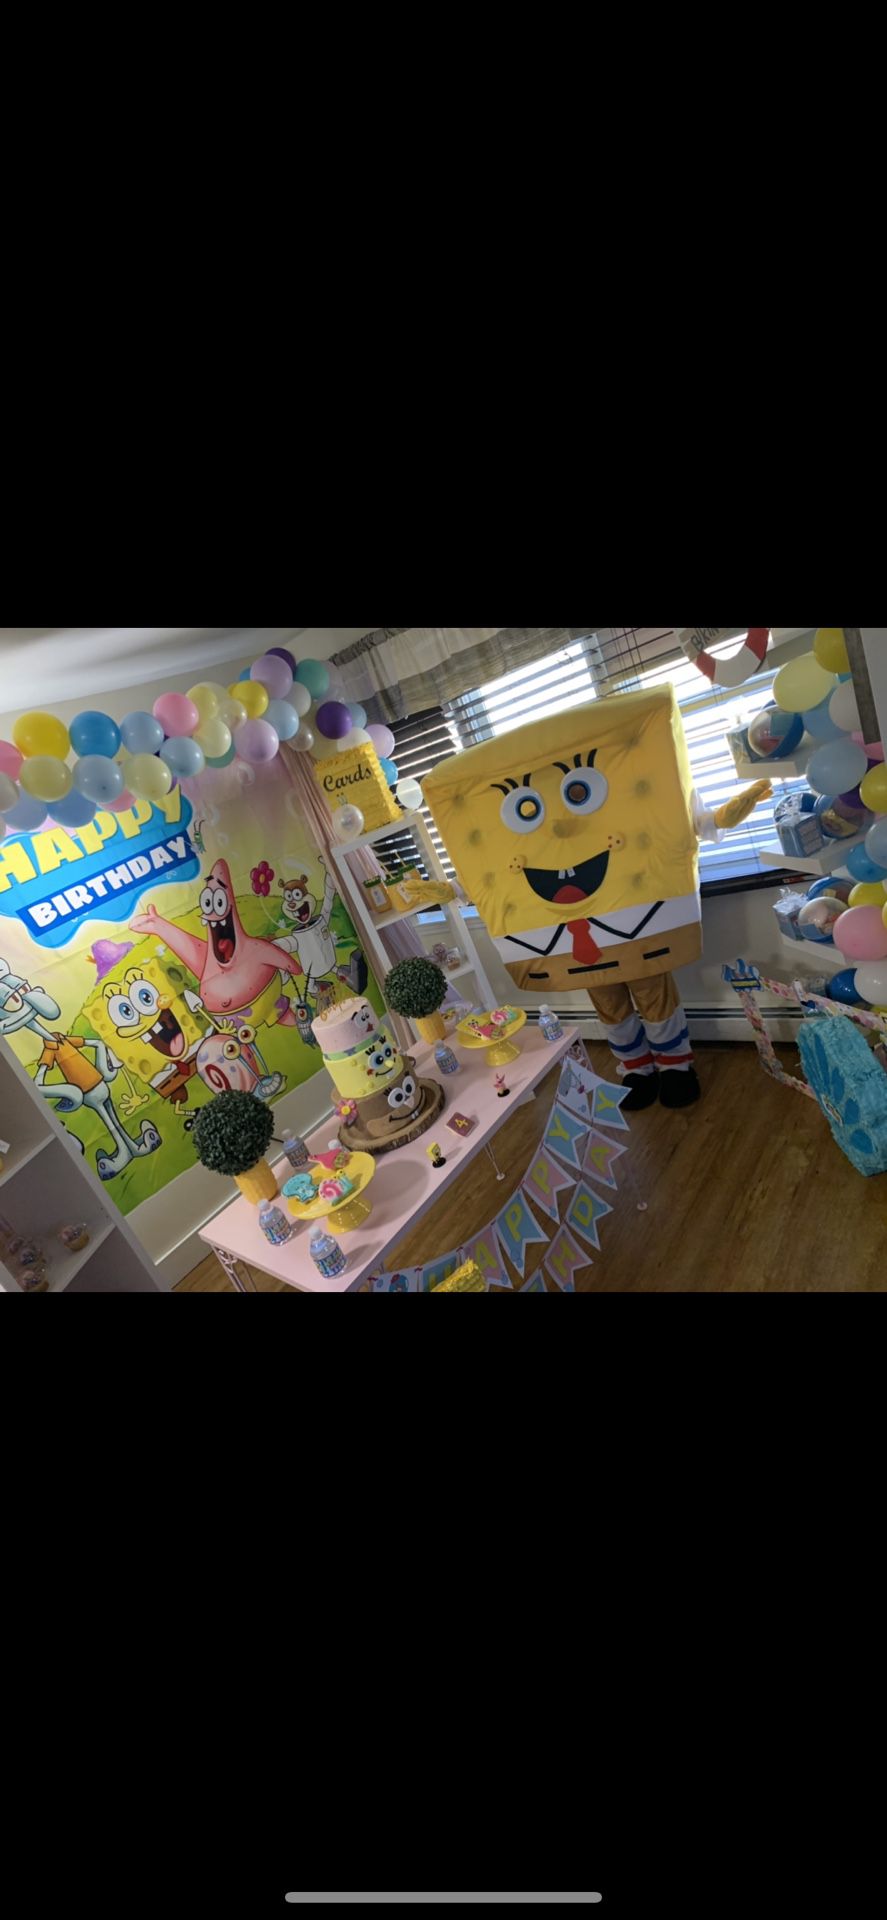 Spongebob Mascot